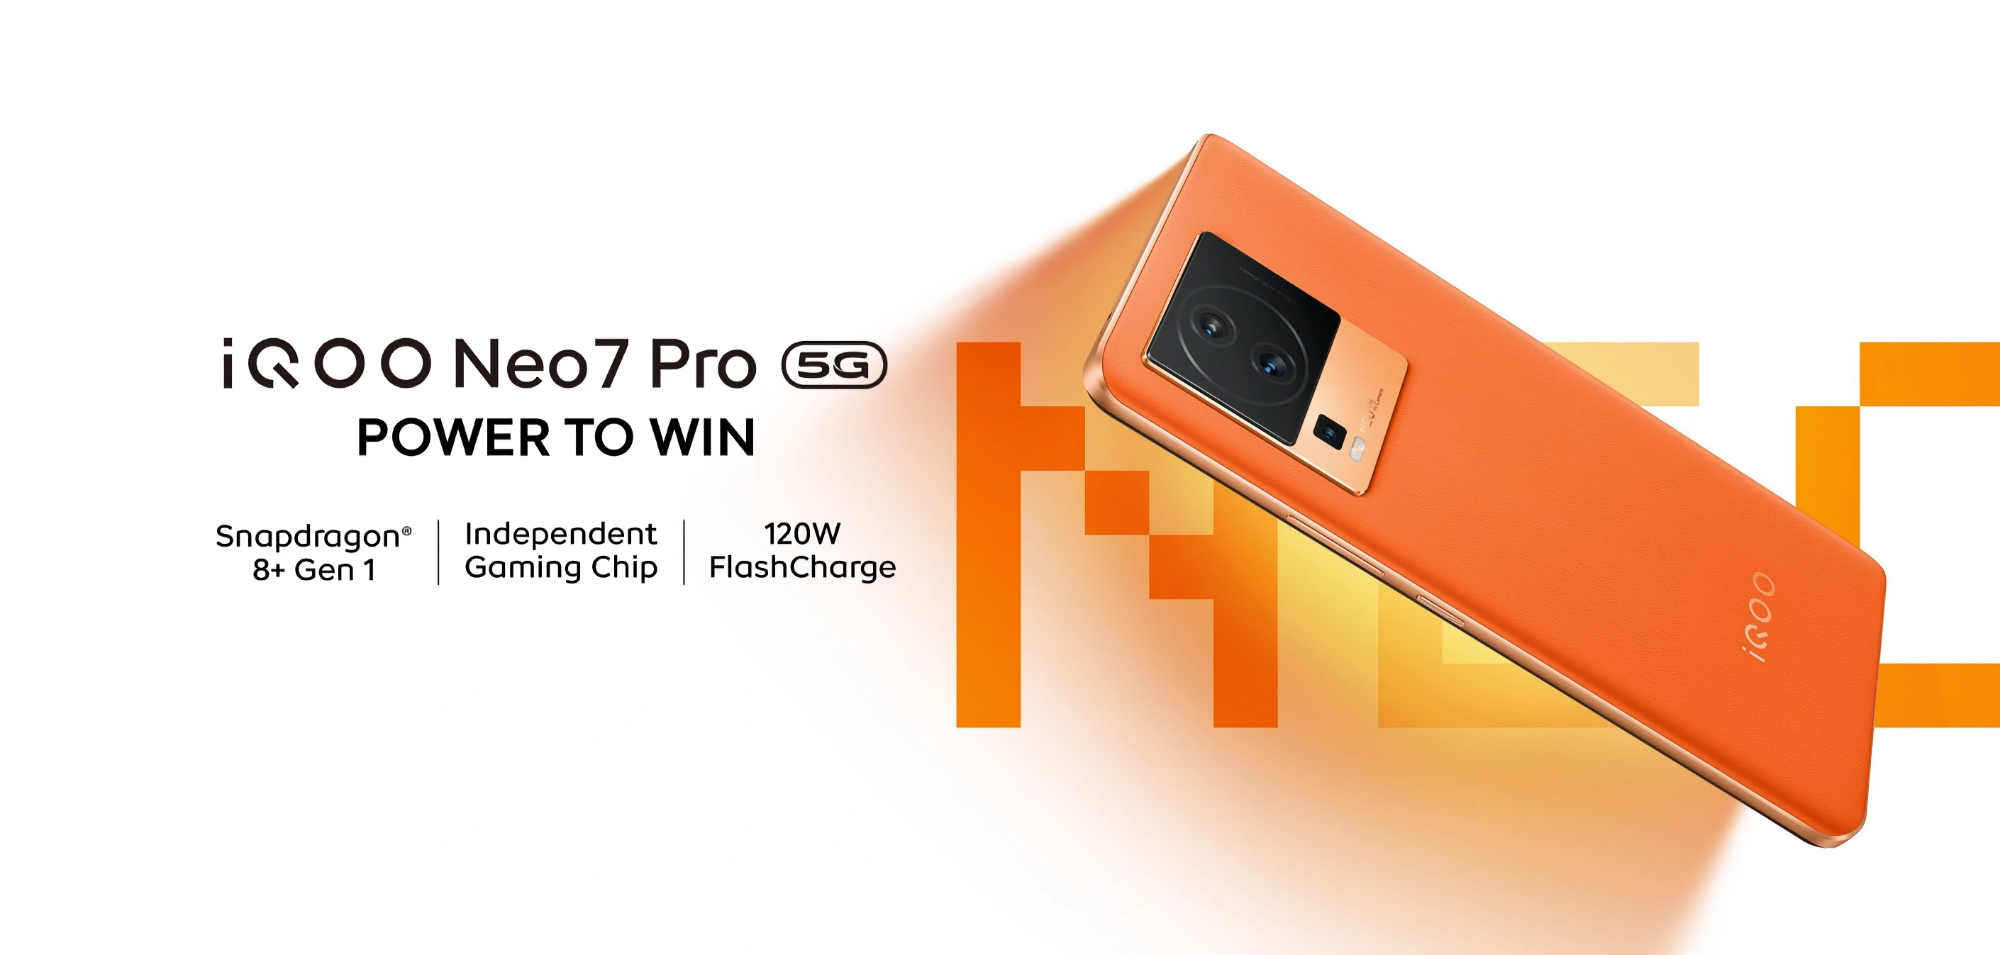 iQOO Neo 7 Pro: wyświetlacz OLED 120 Hz, układ Snapdragon 8+ Gen 1 i bateria 5000 mAh z ładowaniem 120 W